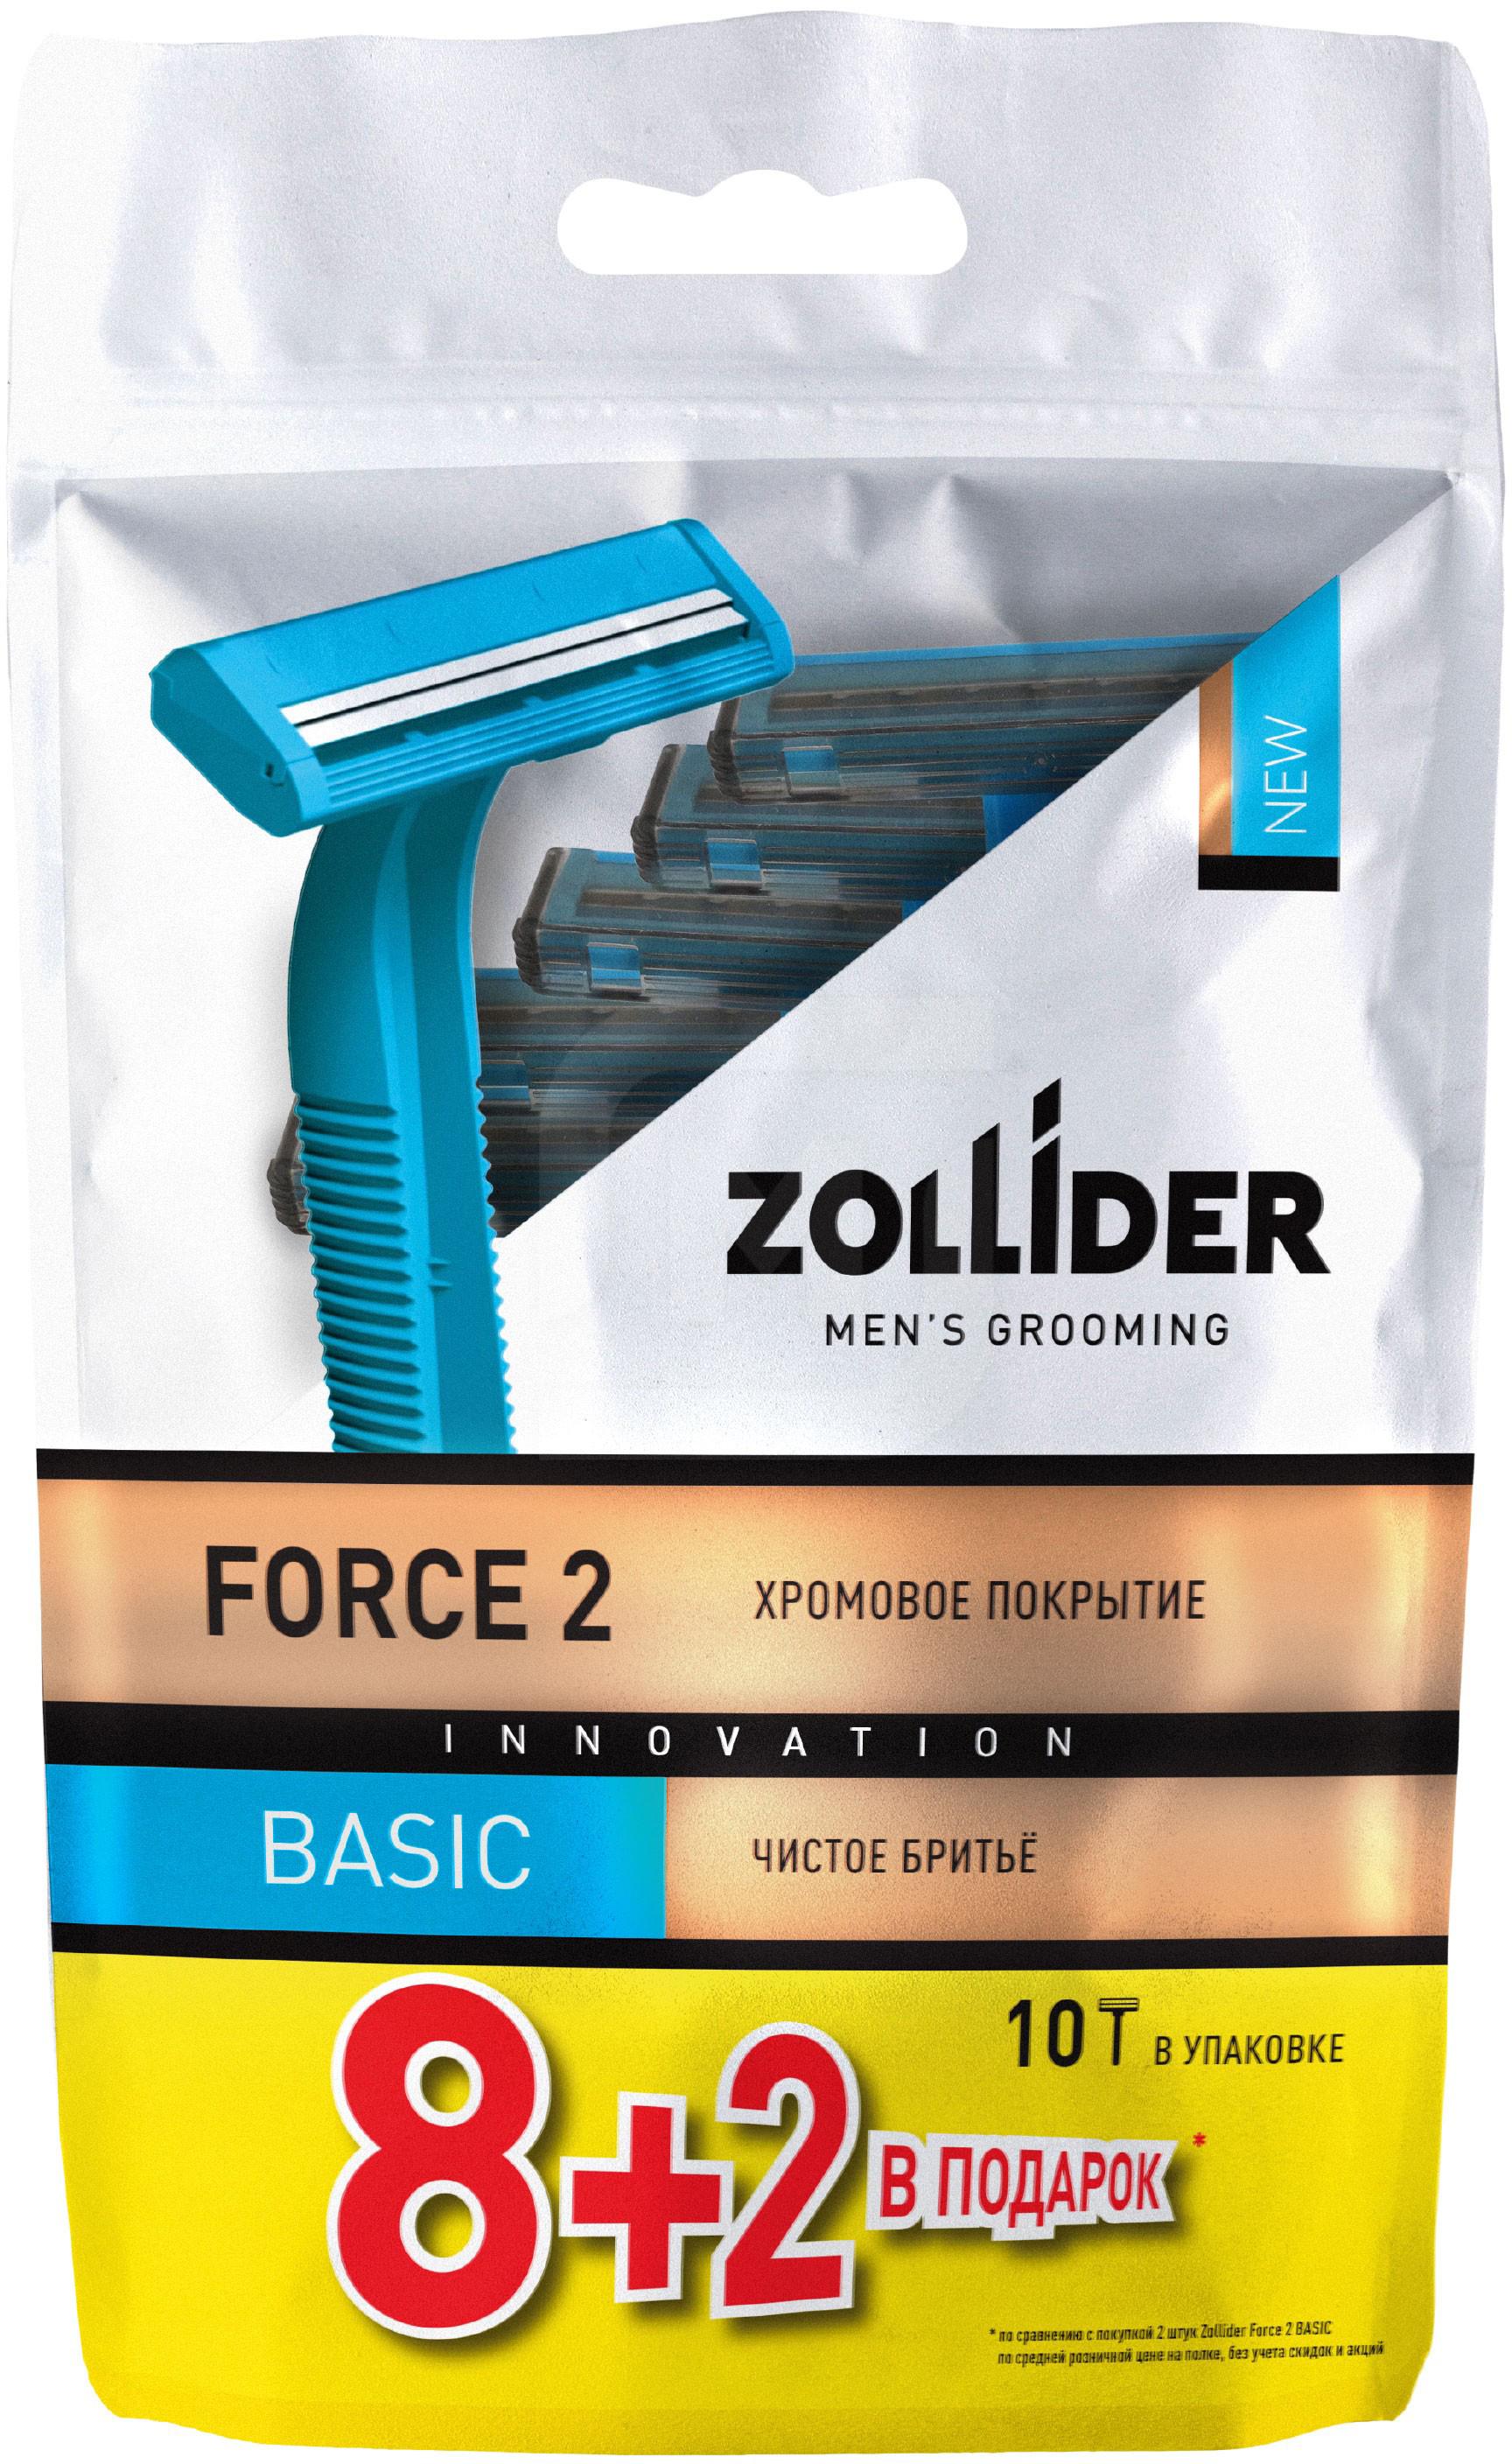 Бритвенные станки мужские Zollider Force 2 Basic одноразовые с двойными лезвиями 8 + 2 шт бритвенные станки мужские zollider force 3 max одноразовые с тройными лезвиями 2 шт